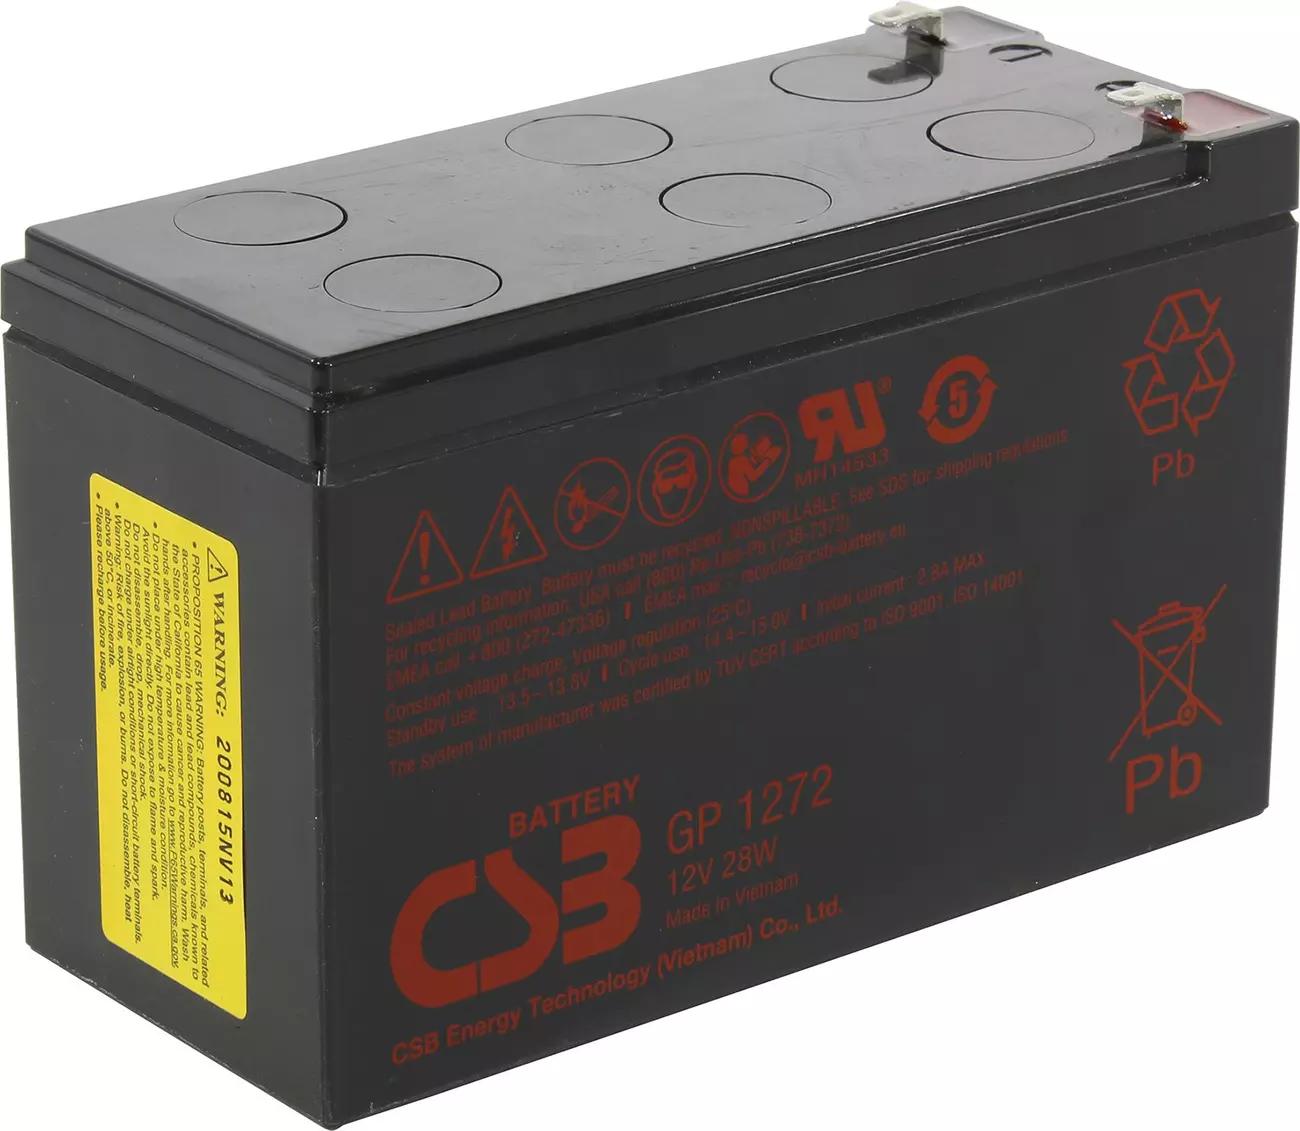 Gp1272 12v. CSB GP 1272 (28w). CSB GP 1272 (28w) f2. Аккумуляторная батарея CSB GP gp1272 f2 (28w), 12v, 7.2Ah. Аккумулятор CSB GP 1272 (28w).